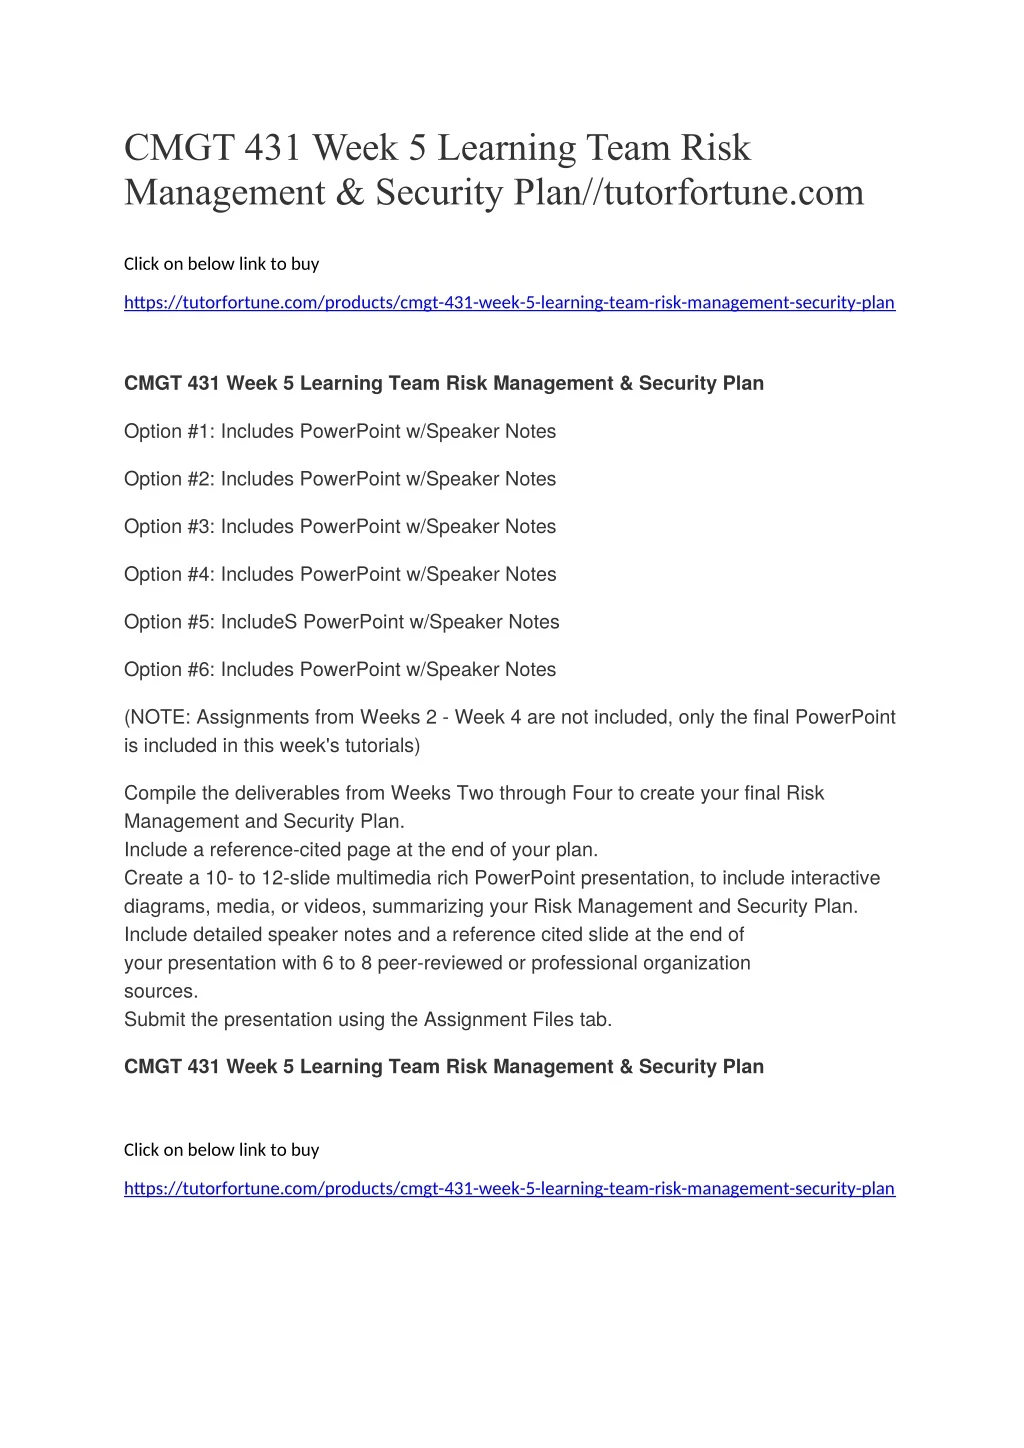 cmgt 431 week 5 learning team risk management